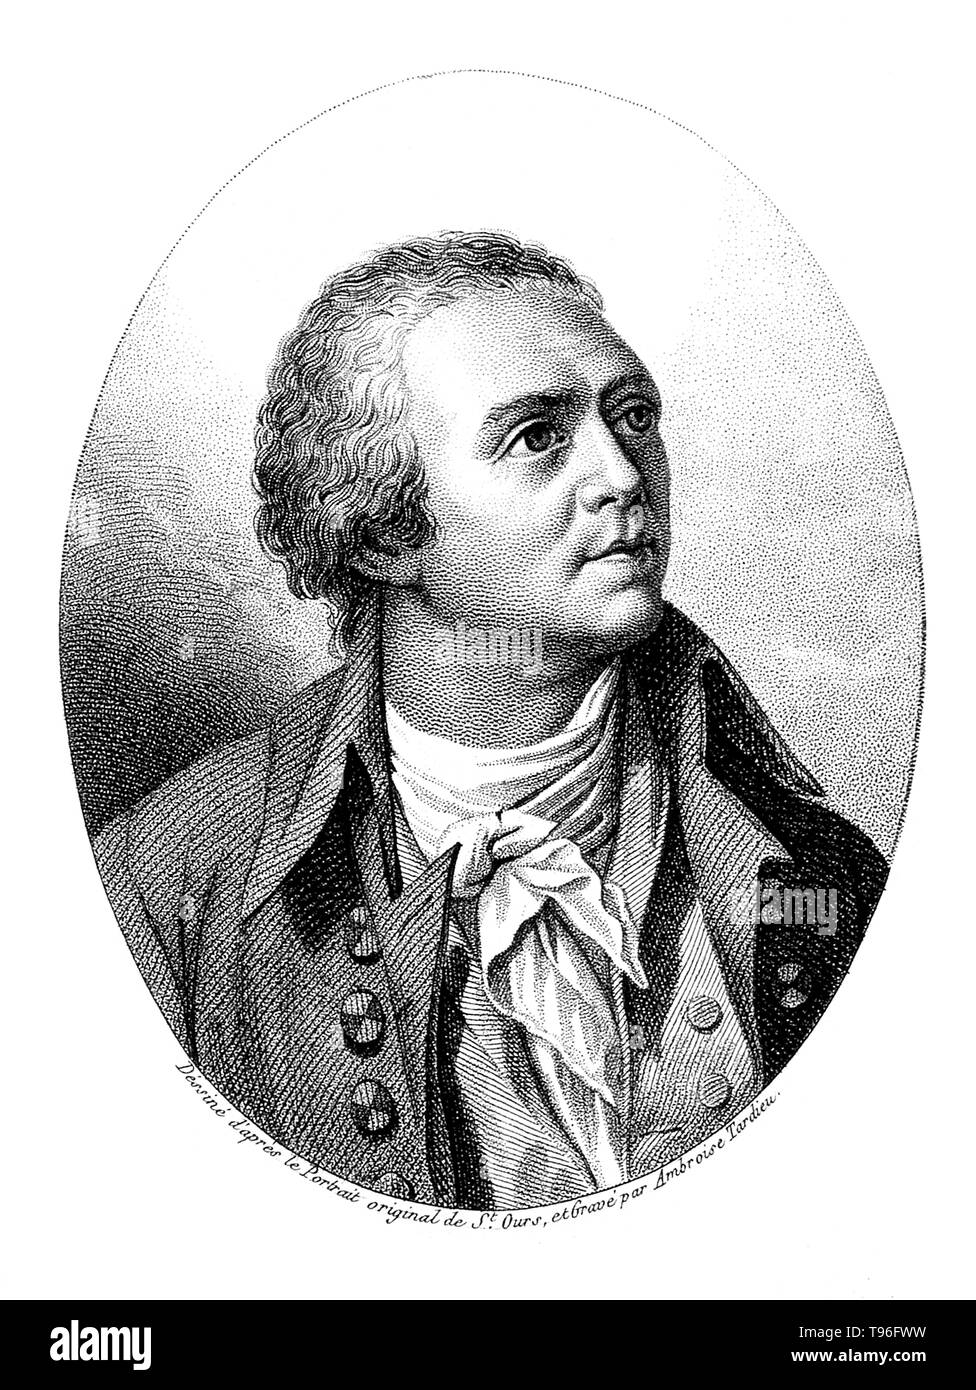 Horace-Bénédict de Saussure (Février 17, 1740 - janvier 22, 1799) était un géologue genevois, météorologue, physicien, alpiniste et explorateur alpin, souvent appelé le fondateur de l'alpinisme et de la météorologie moderne. Il a examiné de près l'inclinaison des strates, la nature des roches, les fossiles et les minéraux des Alpes. Banque D'Images